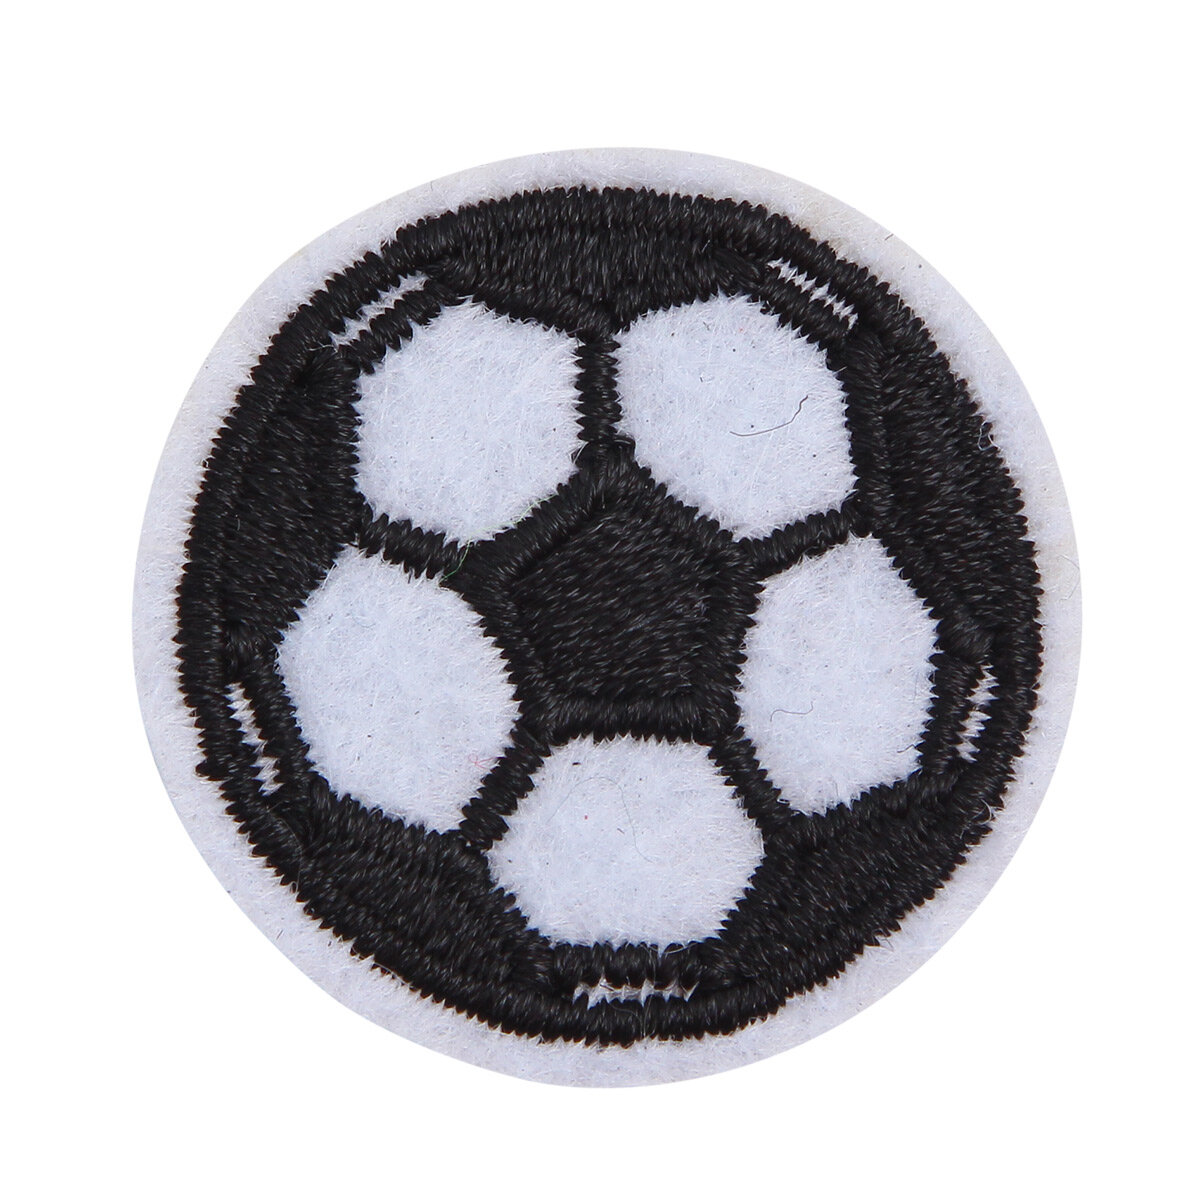 1881257 Термоаппликация футбольный мячик d3см белый/чёрный, 10 шт